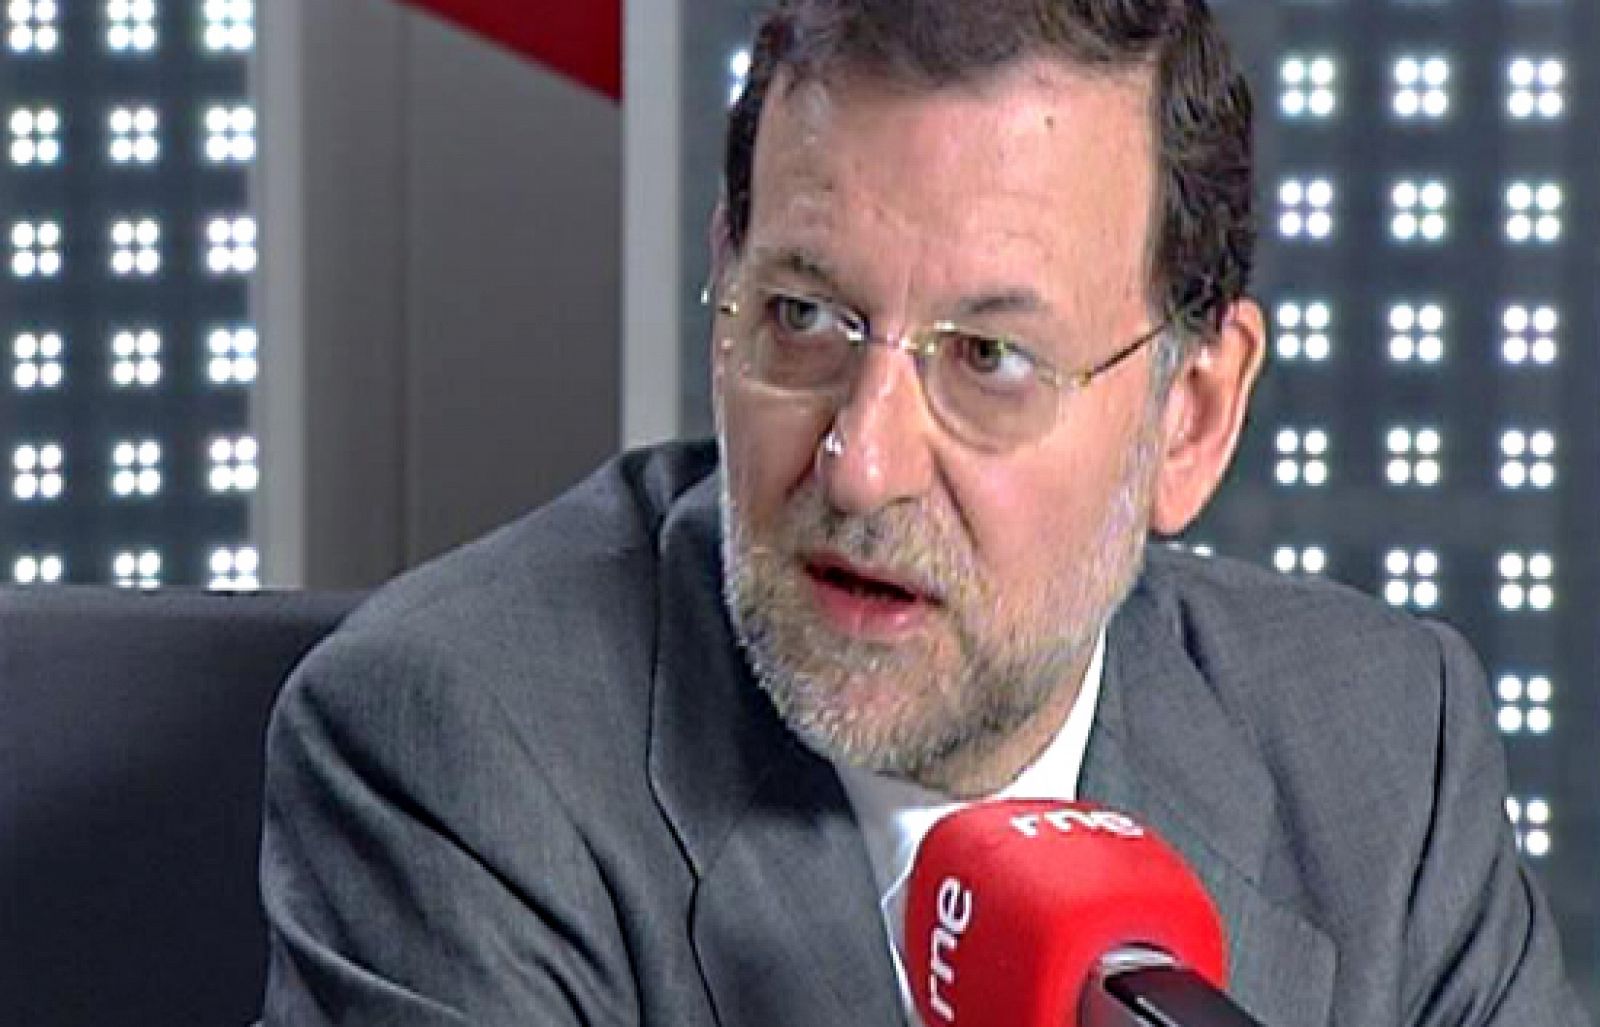 Tengo una pregunta para usted - Mariajo Rajoy vuelve a 'Tengo una pregunta para usted' el 30 de marzo